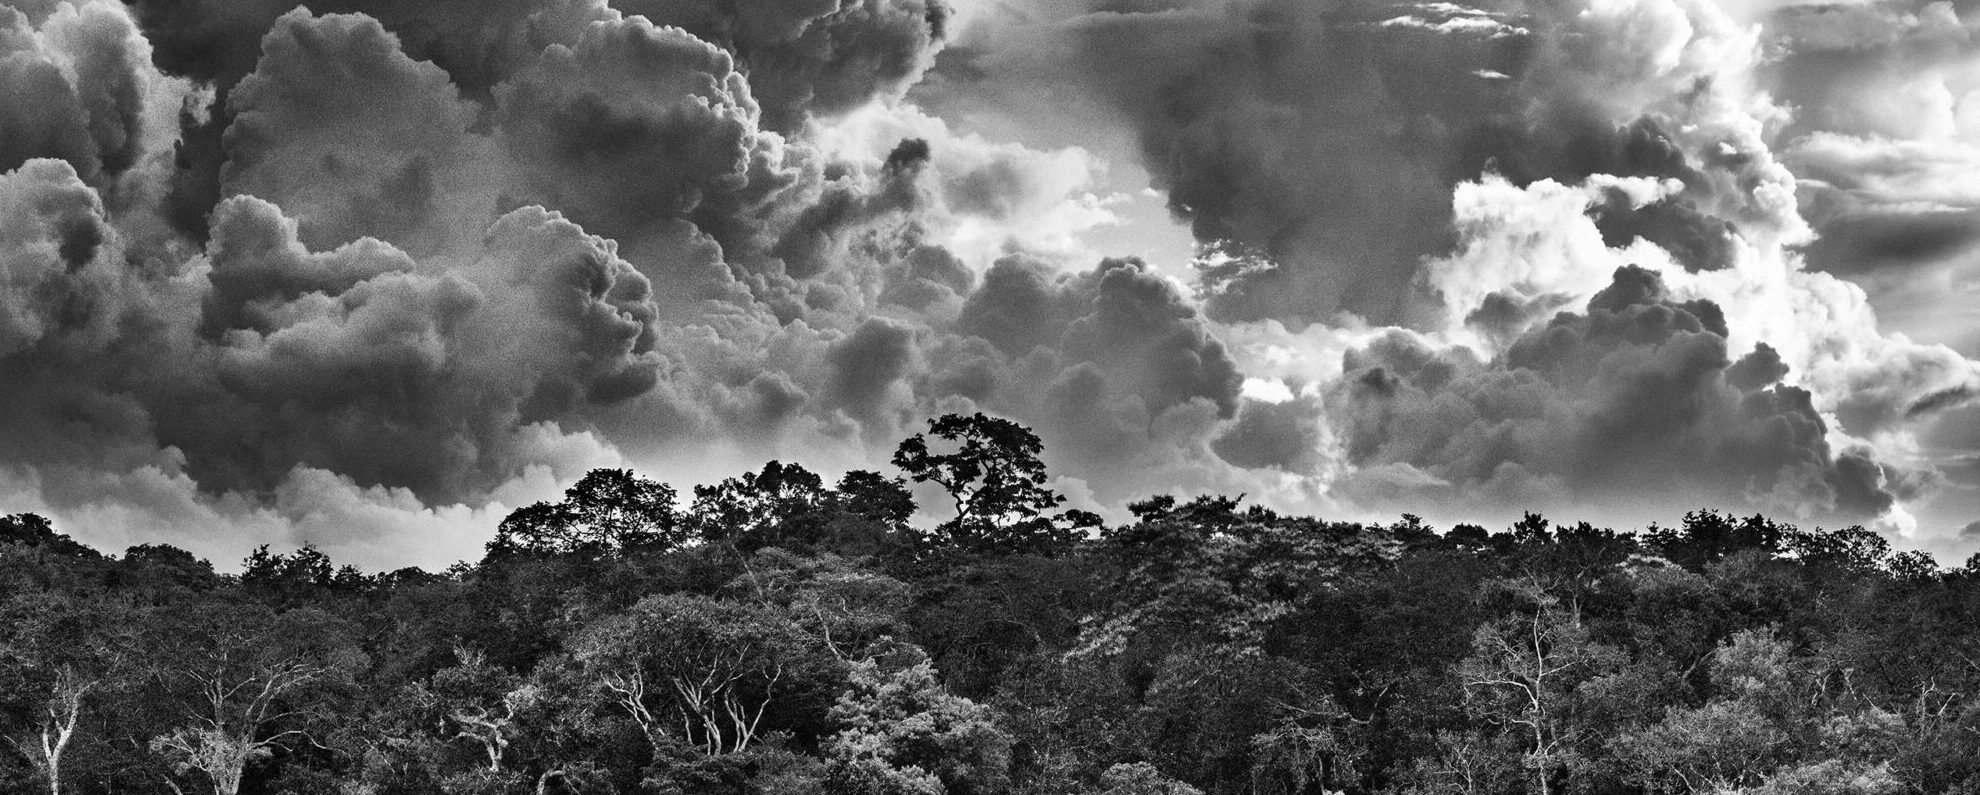 <p>La exposición Amazônia de Sebastião Salgado en el Museo de la Ciencia de Londres muestra el bioma en monocromo dramático. Esta fotografía muestra el archipiélago de Mariuá sobre el Río Negro, estado de Amazonas, 2019. (Imagen © ️ Sebastião Salgado / nbpictures)</p>